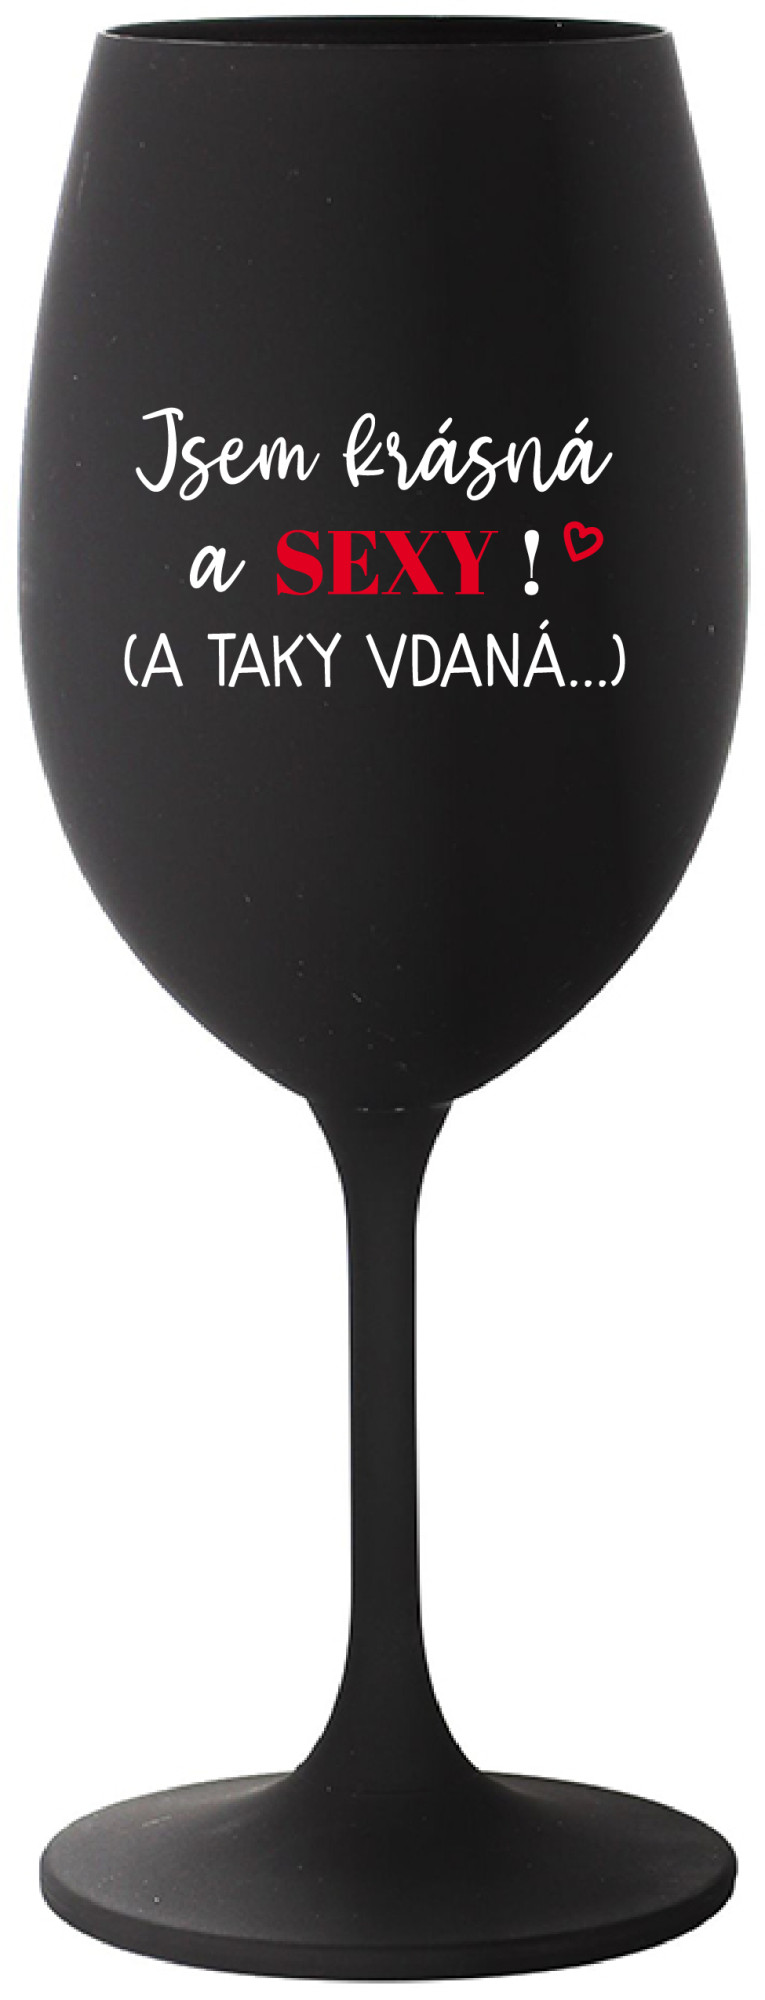 JSEM KRÁSNÁ A SEXY! (A TAKY VDANÁ...) - černá sklenice na víno 350 ml